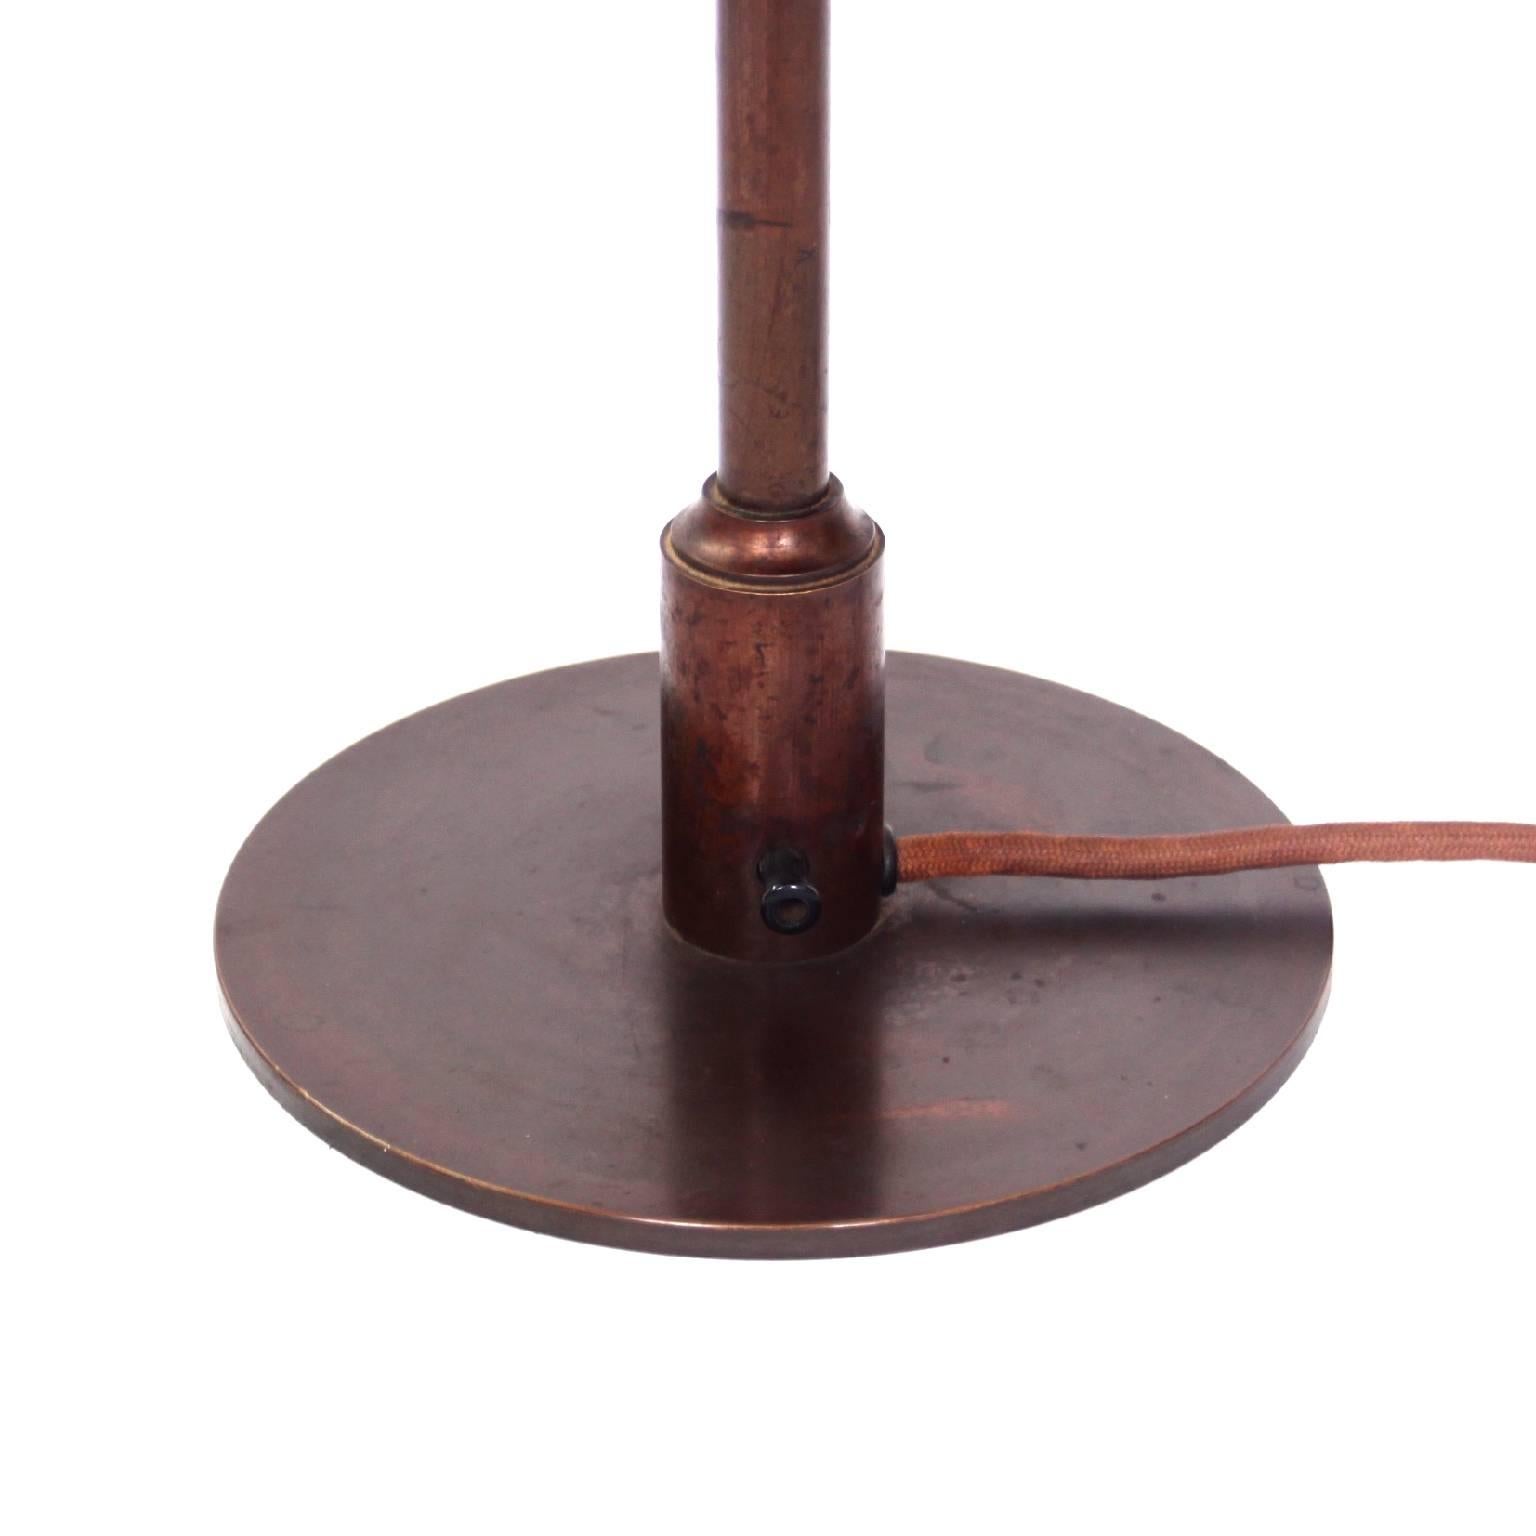 Poul Henningsen & Louis Poulsen, design moderne du milieu du siècle dernier

Il s'agit de l'emblématique lampe de table Poul Henningsen (PH 4/3) avec ses abat-jour en cuivre d'origine.

Socle, interrupteur et douille en laiton bruni. 

Conçu en 1927